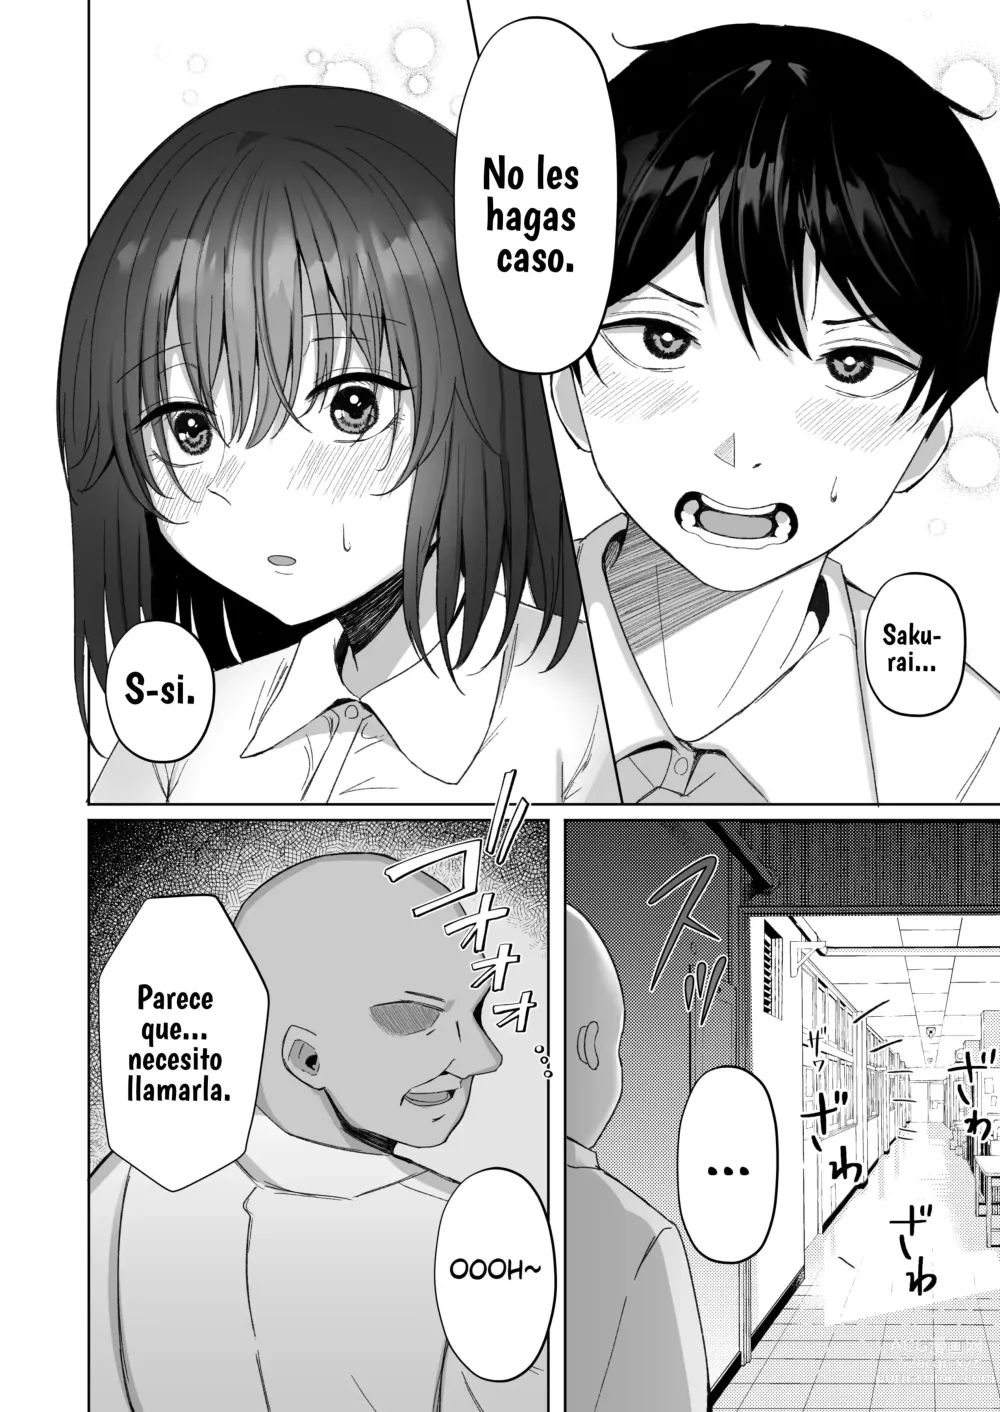 Page 7 of doujinshi El sufrimiento de la chica de pelo negro.